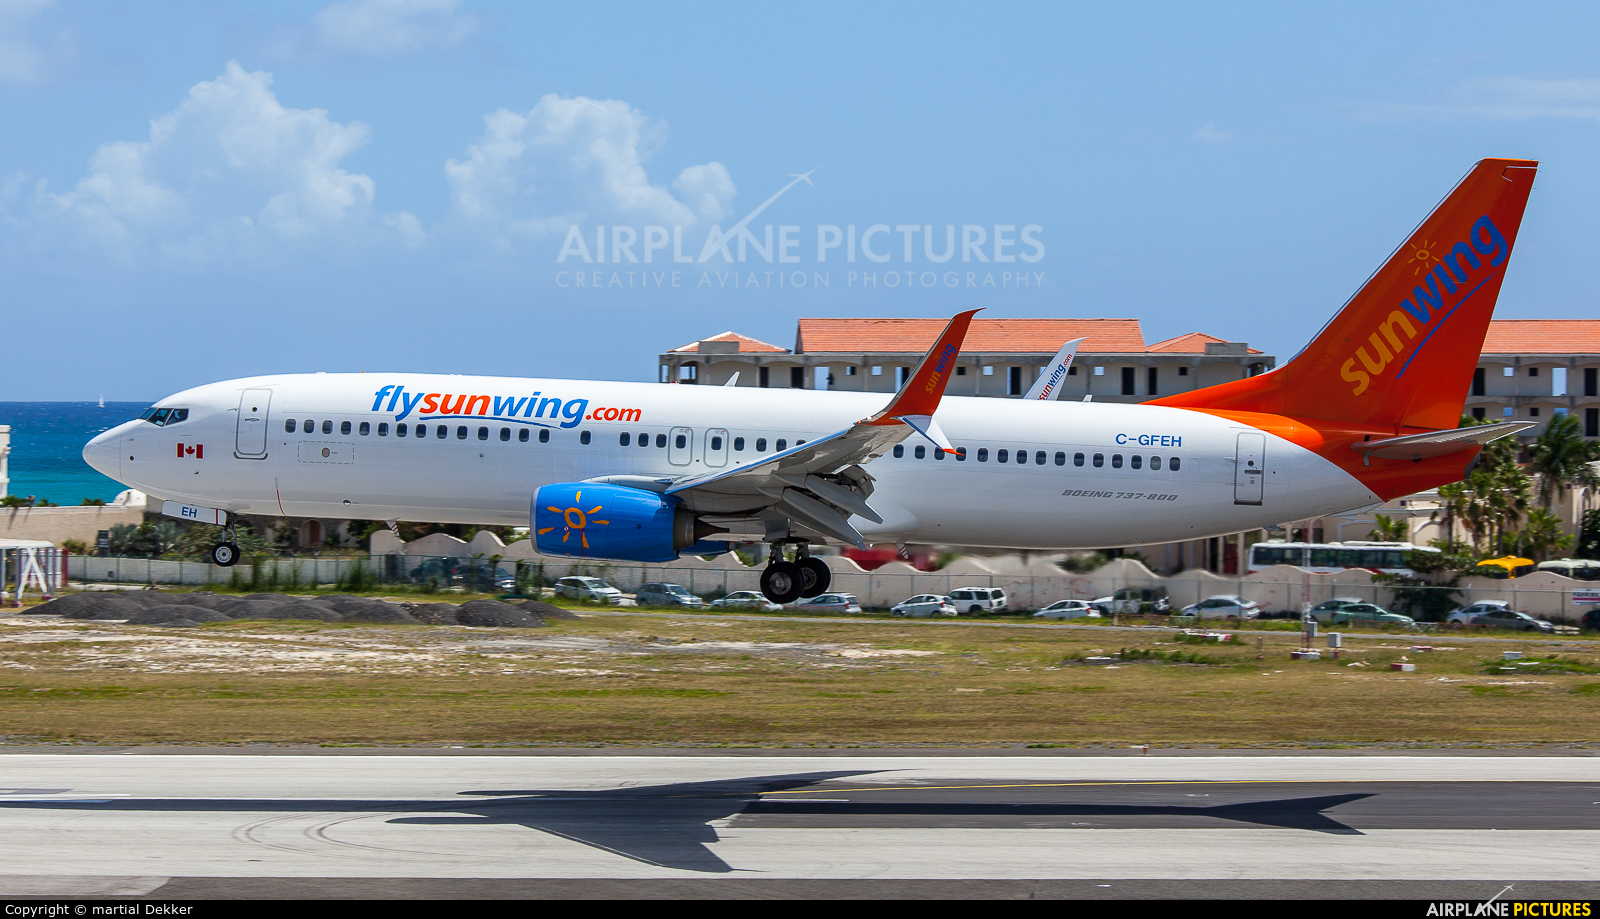 Sunwing Airlines C-GFEH aircraft at Sint Maarten - Princess Juliana Intl